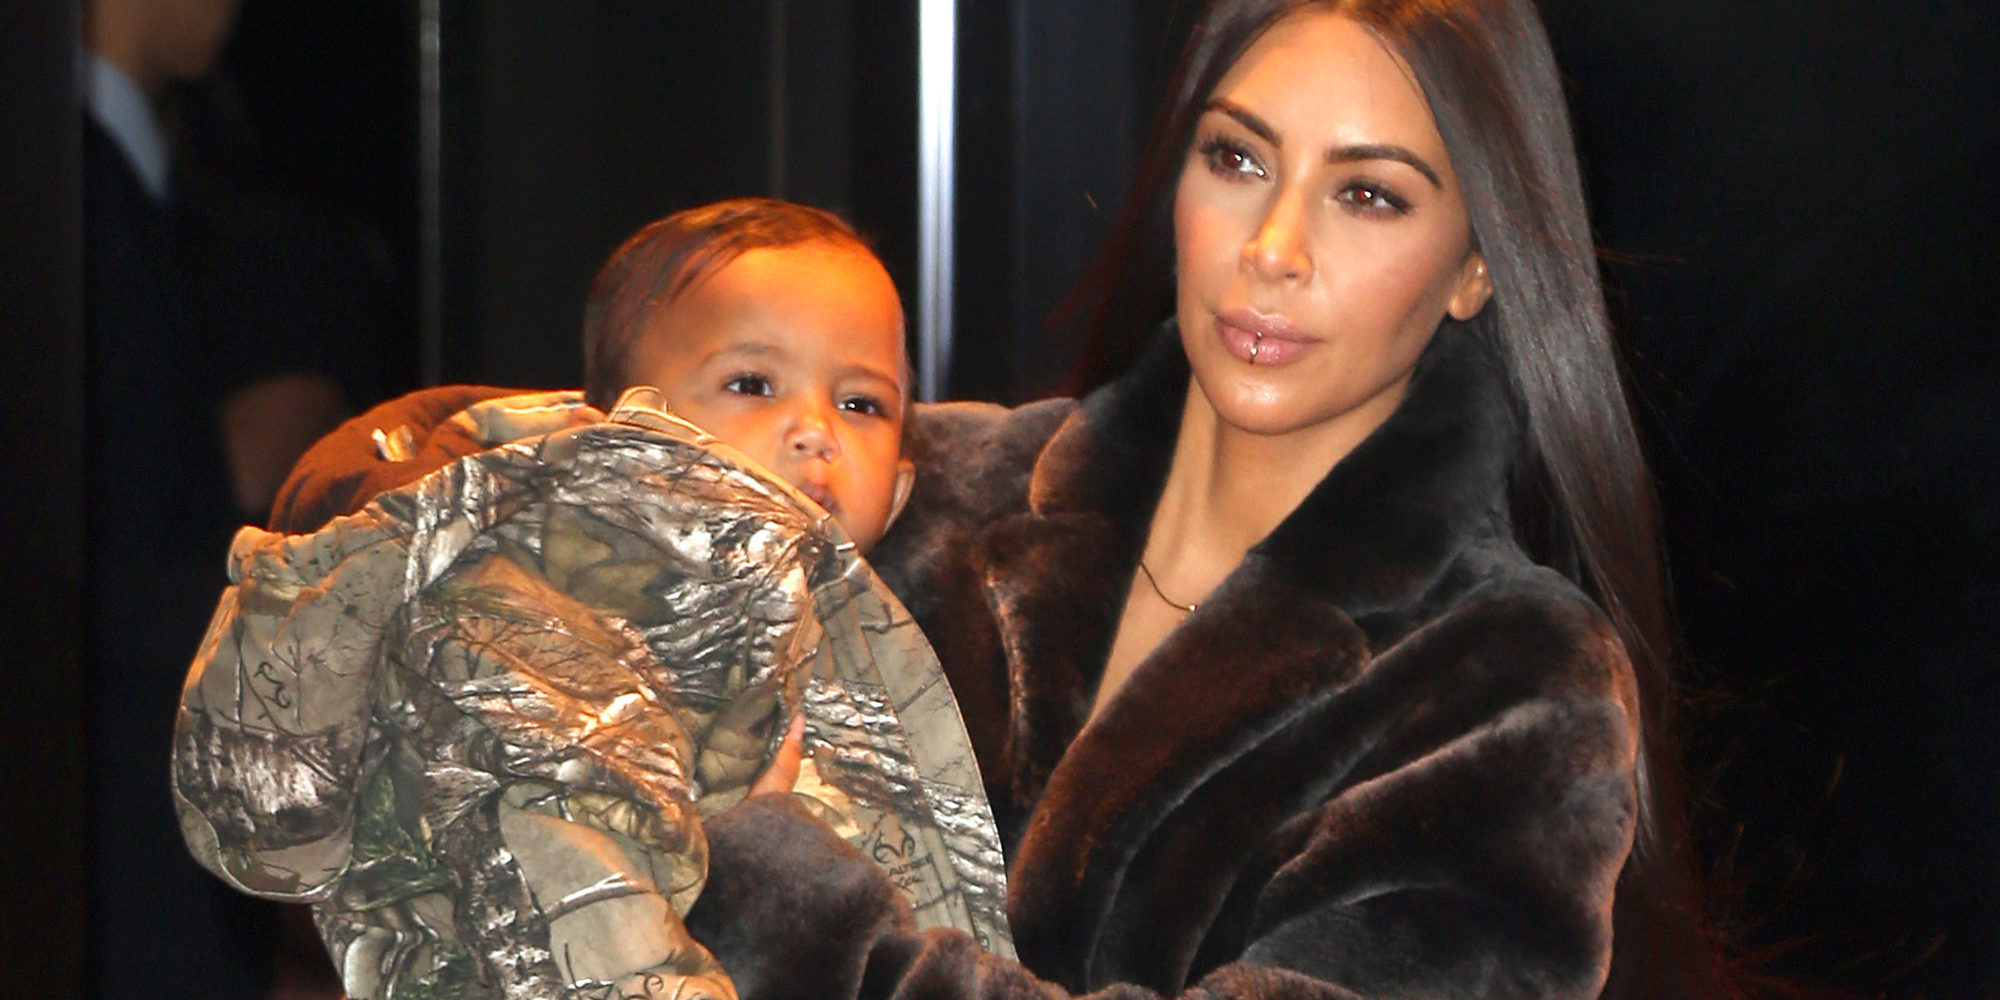 Una foto de Saint West, el segundo hijo de Kim Kardashian, causa sensación en las redes